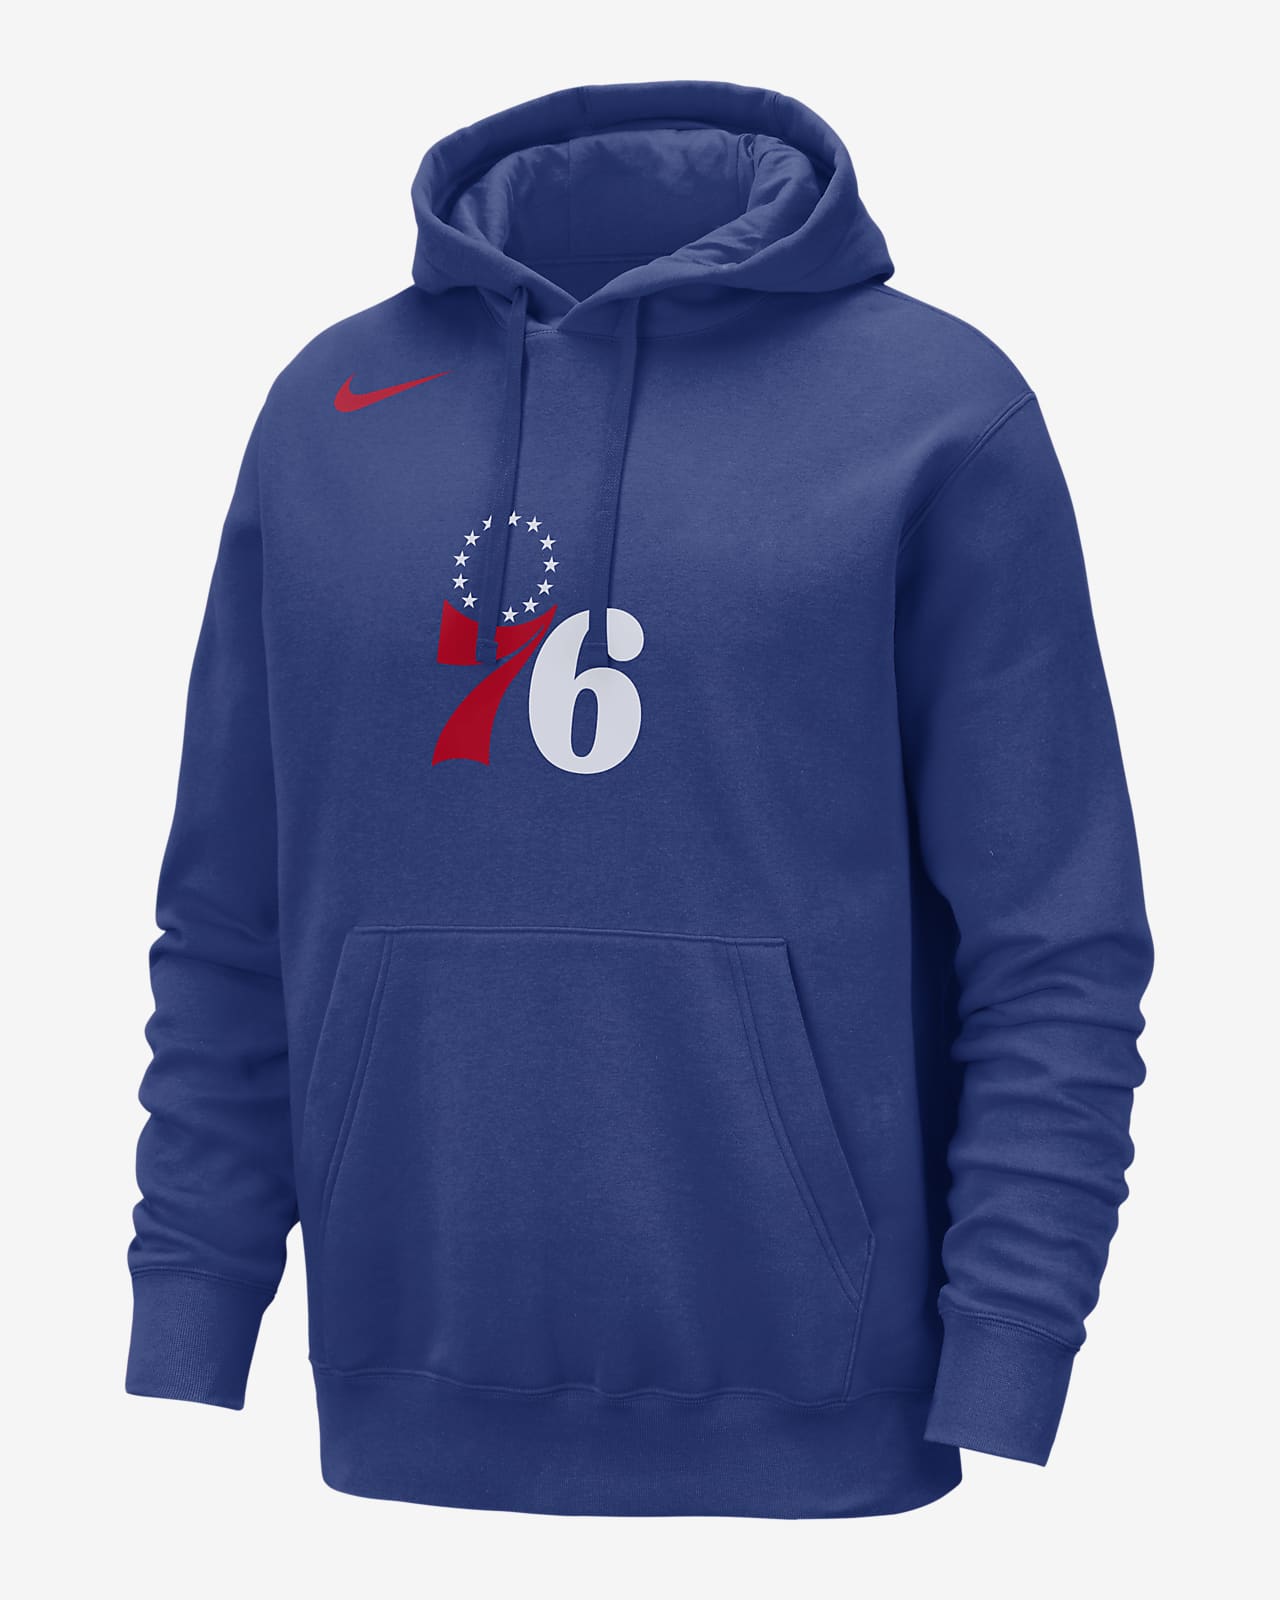 Philadelphia 76ers Club Nike NBA-hoodie voor heren